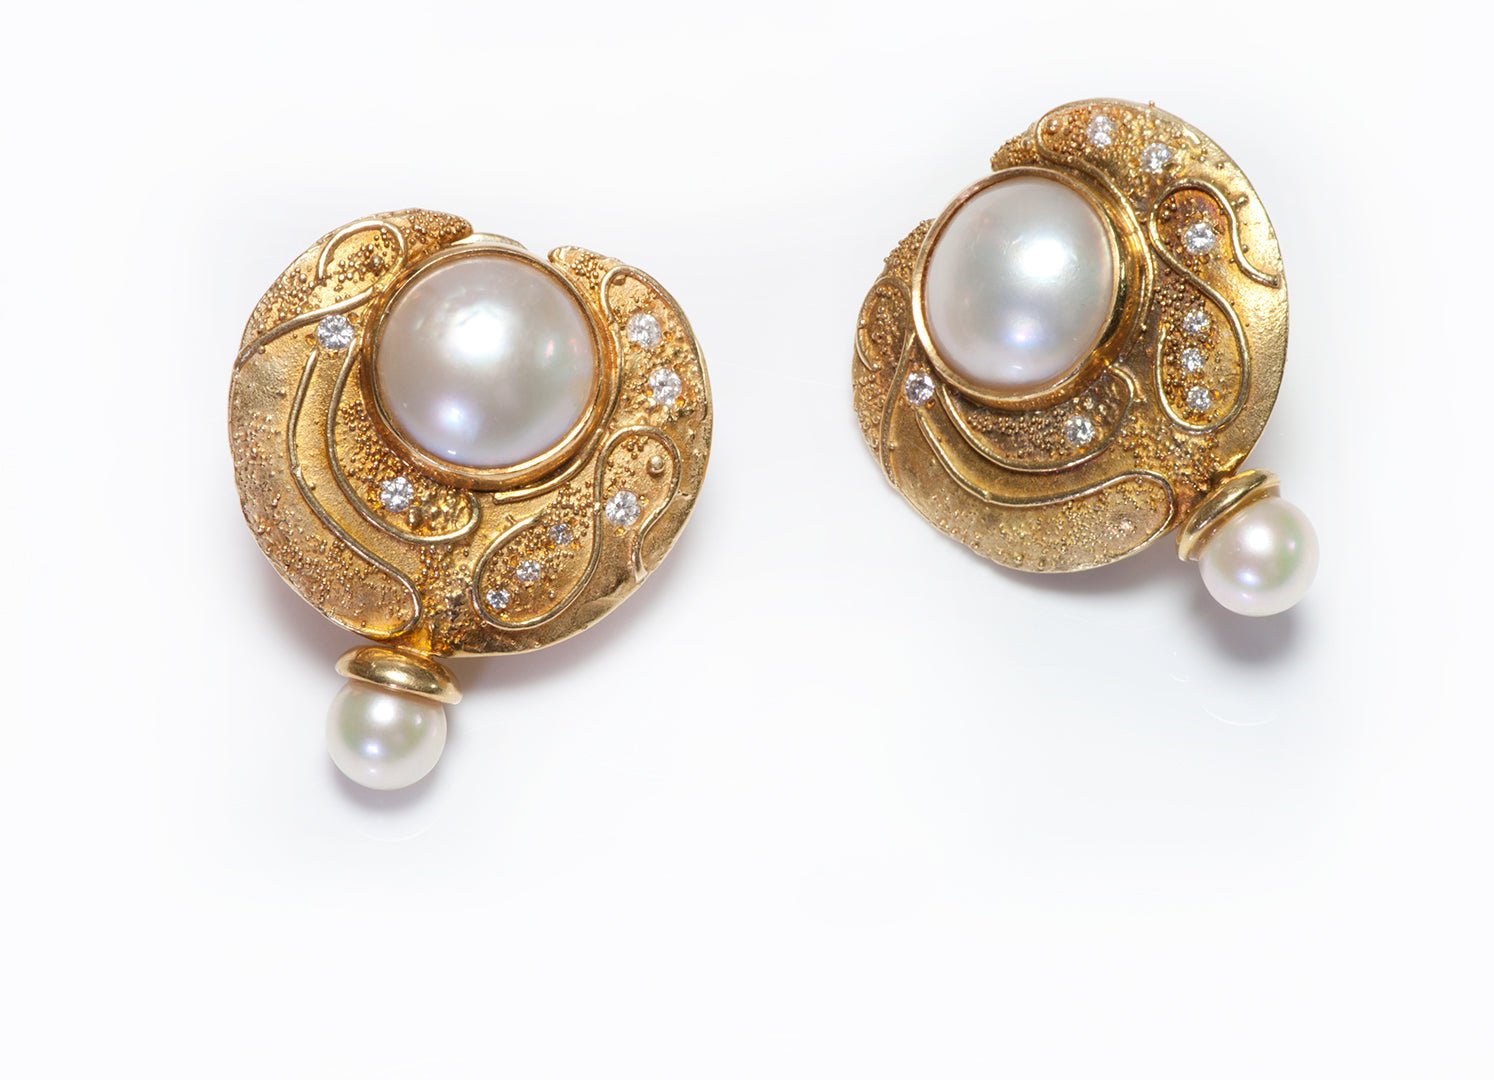 Elizabeth Gage 18K Yellow Gold Diamond Pearl Earrings